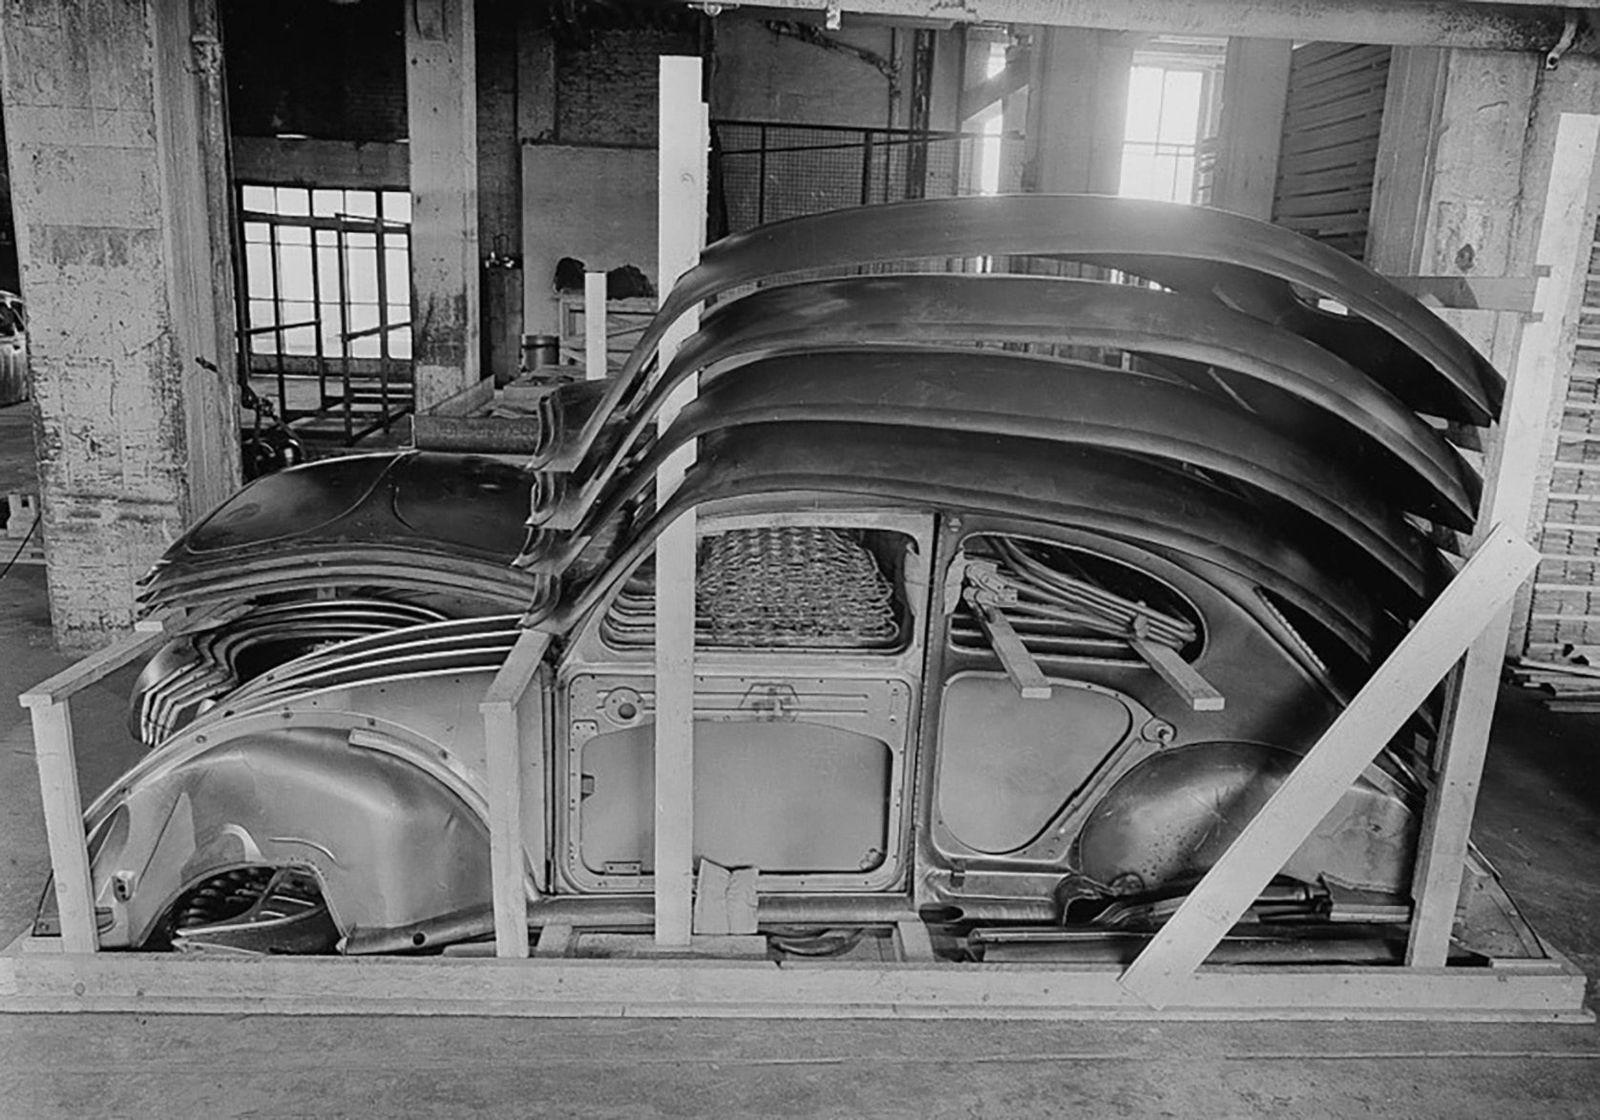 Käfer in Kisten: 70 Jahre Export von Autos als Bausatz bei Volkswagen